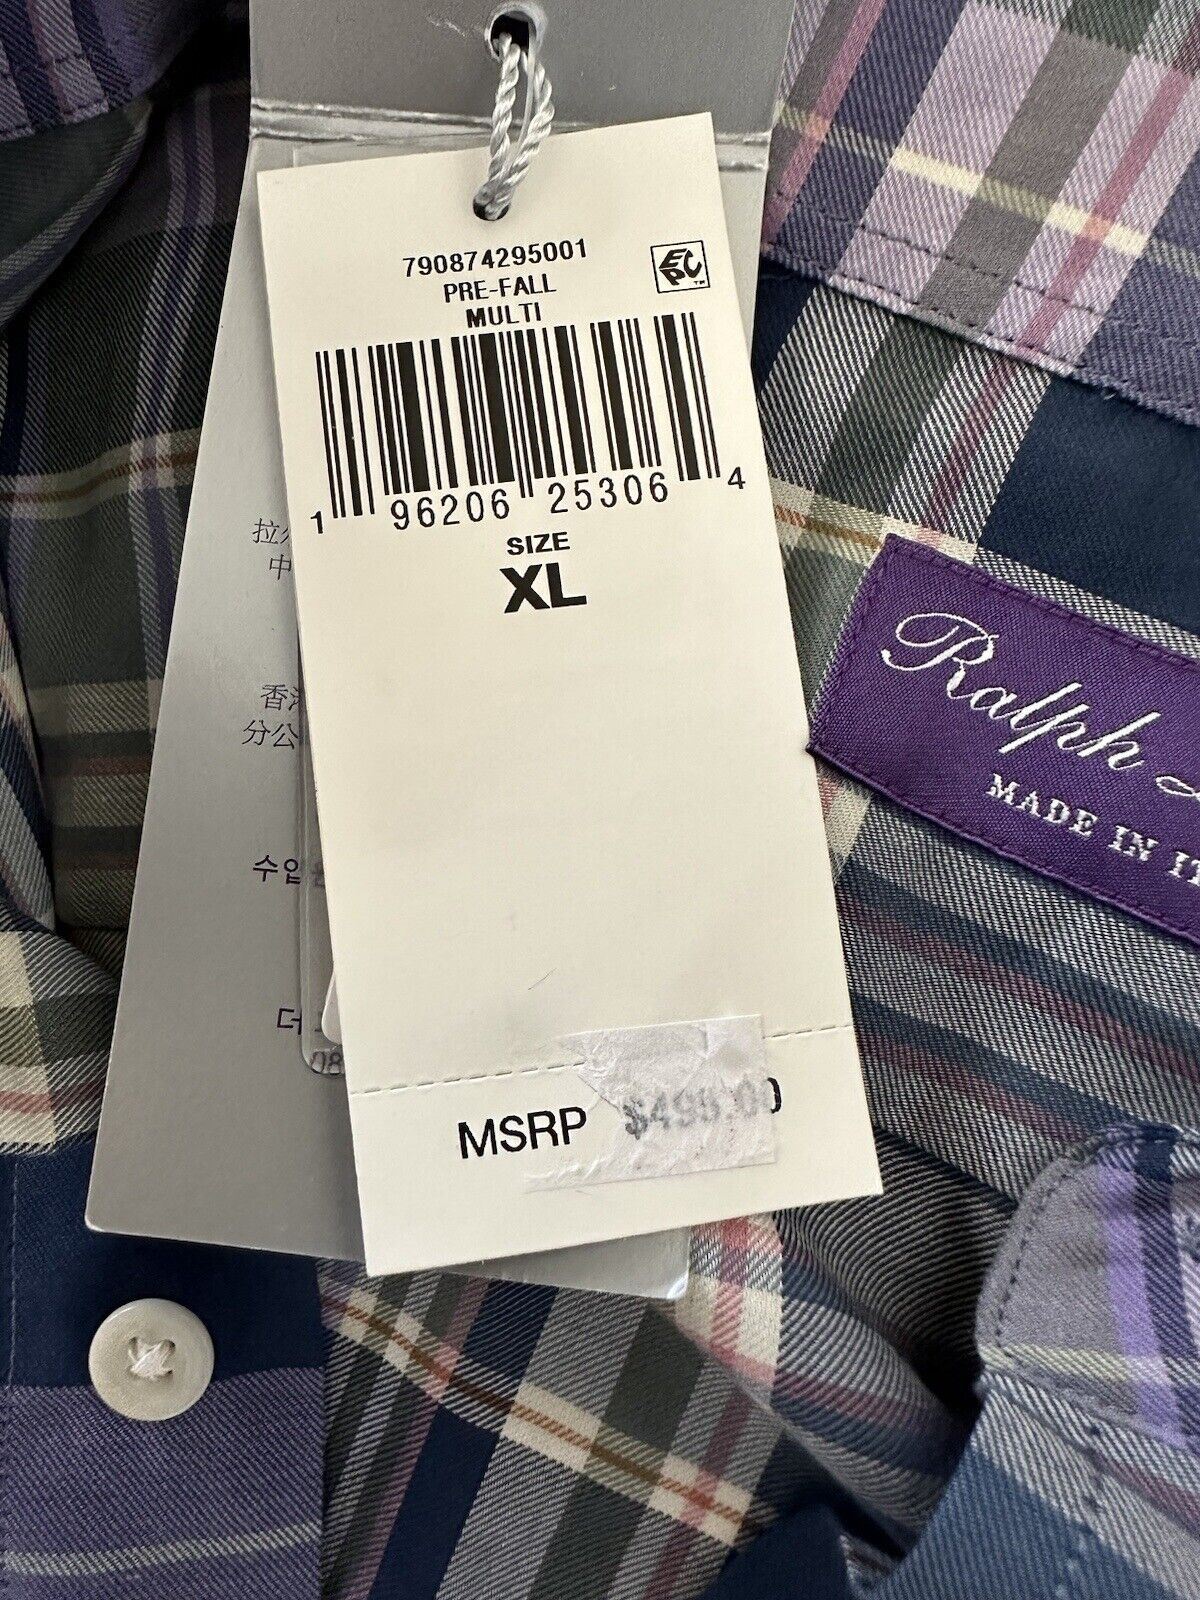 Мужская хлопковая мужская рубашка размера XL от Ralph Lauren Purple Label стоимостью 495 долларов США, сделано в Италии 